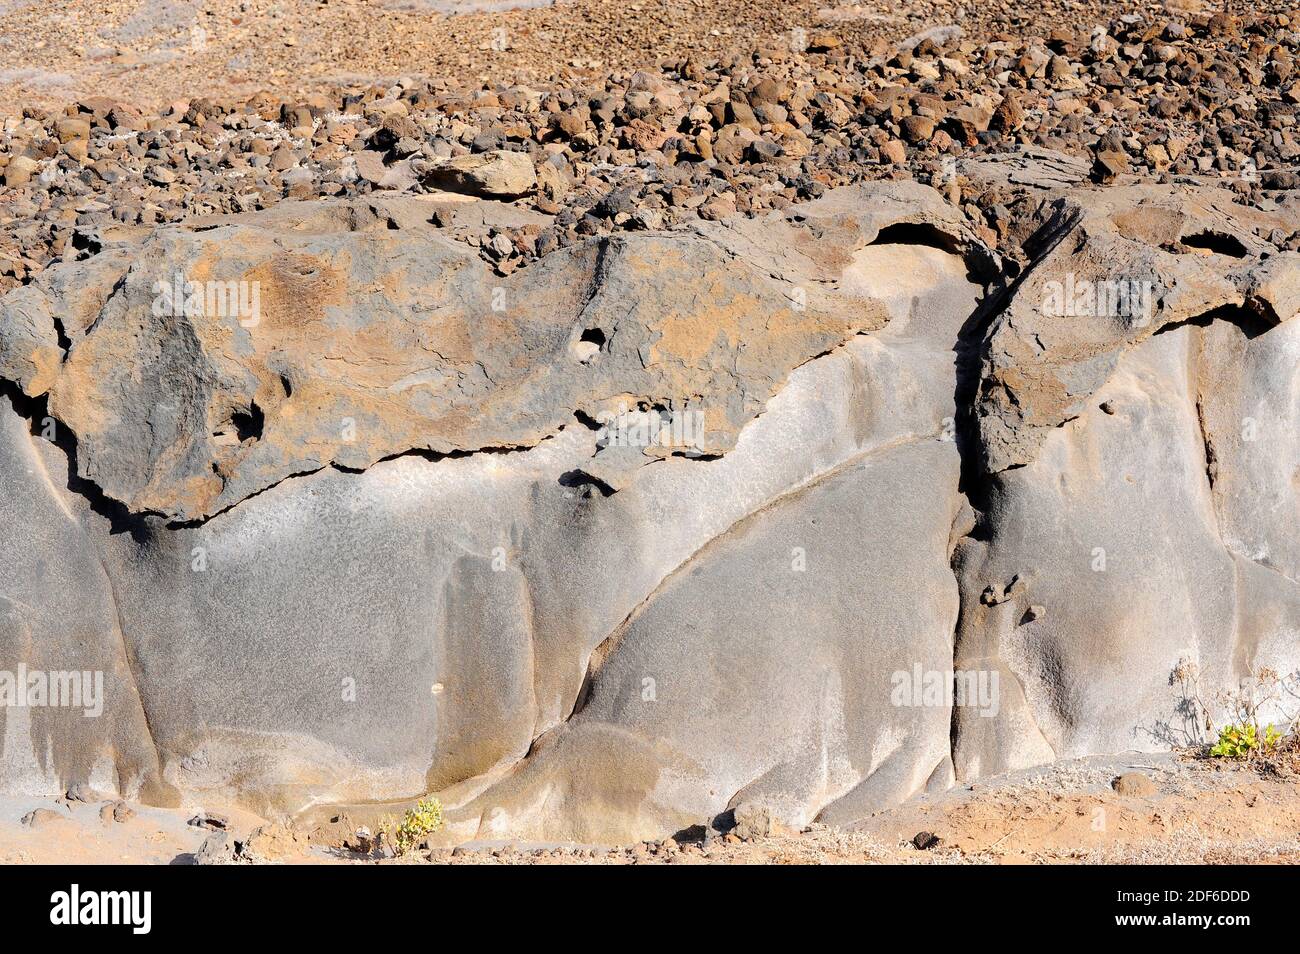 Pyroklastische Gesteine oder Tephra sind klastische Gesteine, die aus vulkanischen Materialien wie Asche, Lapilli, Bomben oder Blöcken bestehen. Dieses Foto wurde in Gran aufgenommen Stockfoto